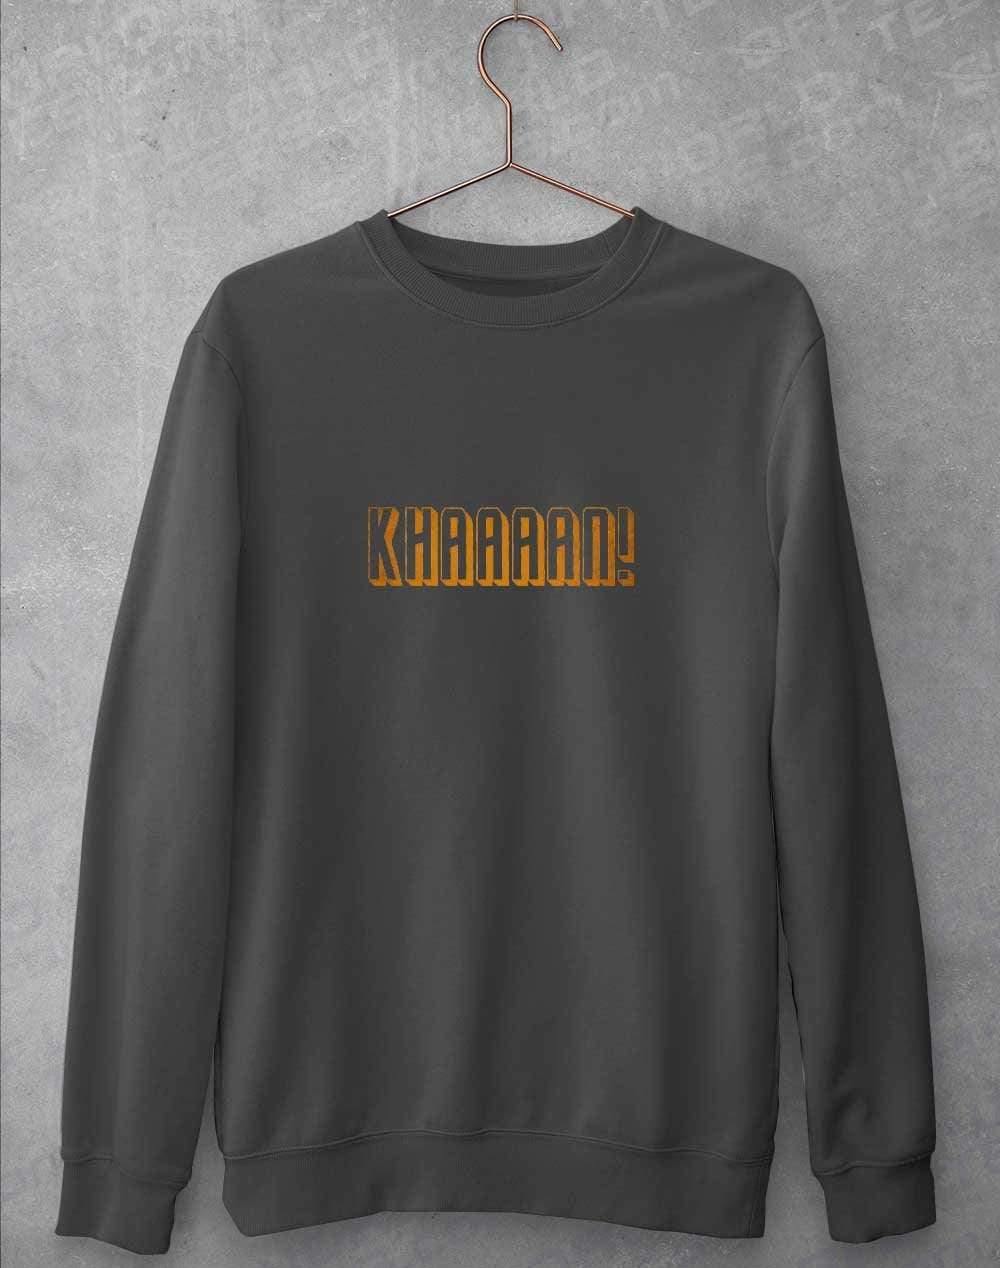 KHAAAAAN Sweatshirt S / Charcoal  - Off World Tees